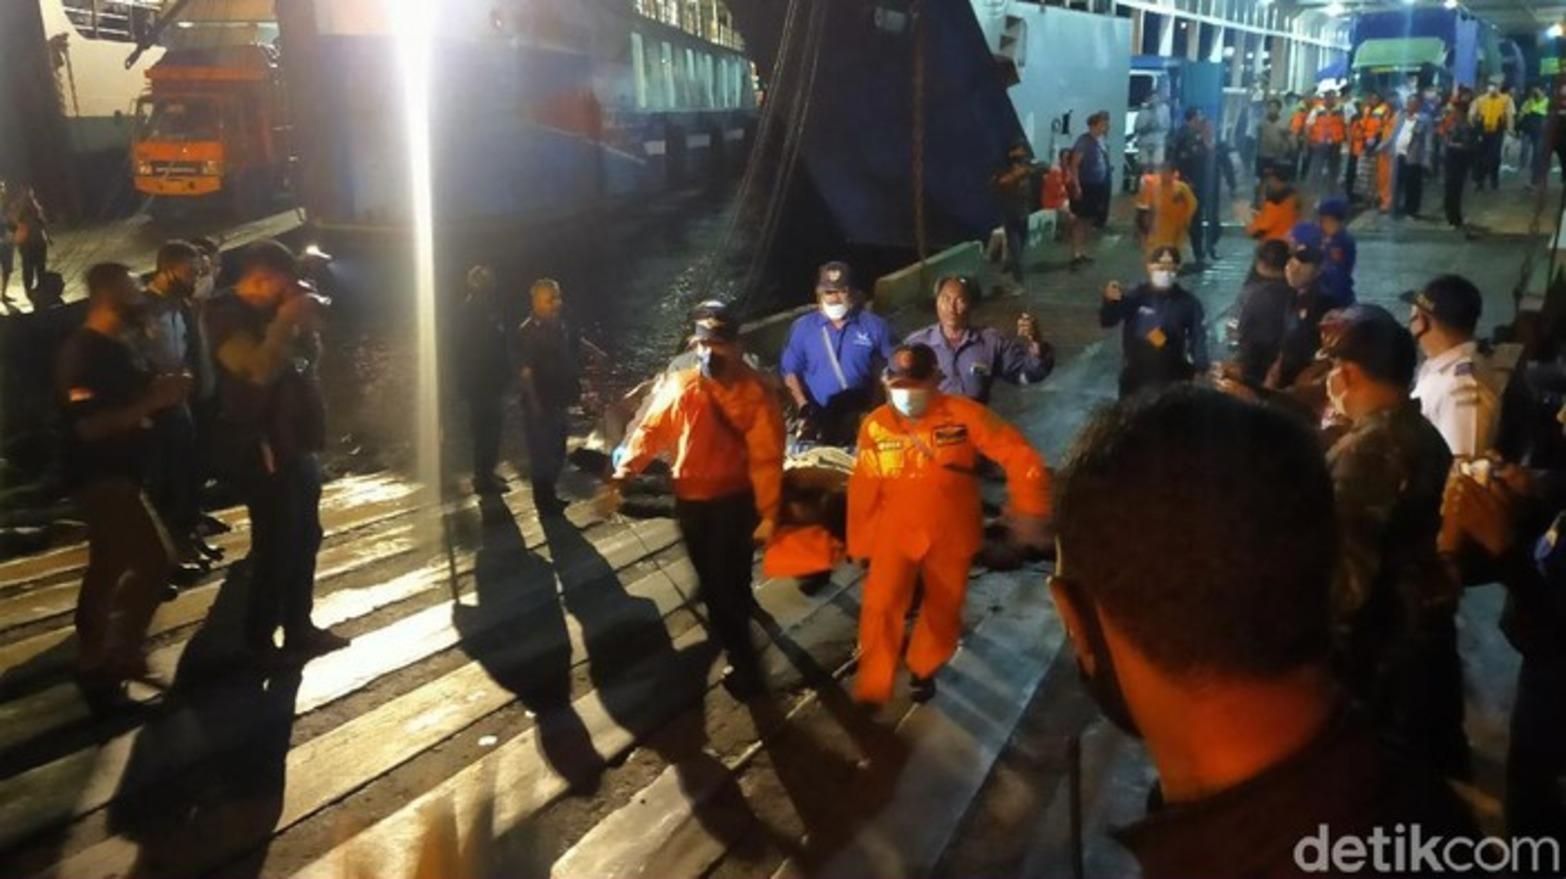 В Индонезии пошло ко дну судно с более 50 людьми: есть жертвы – видео